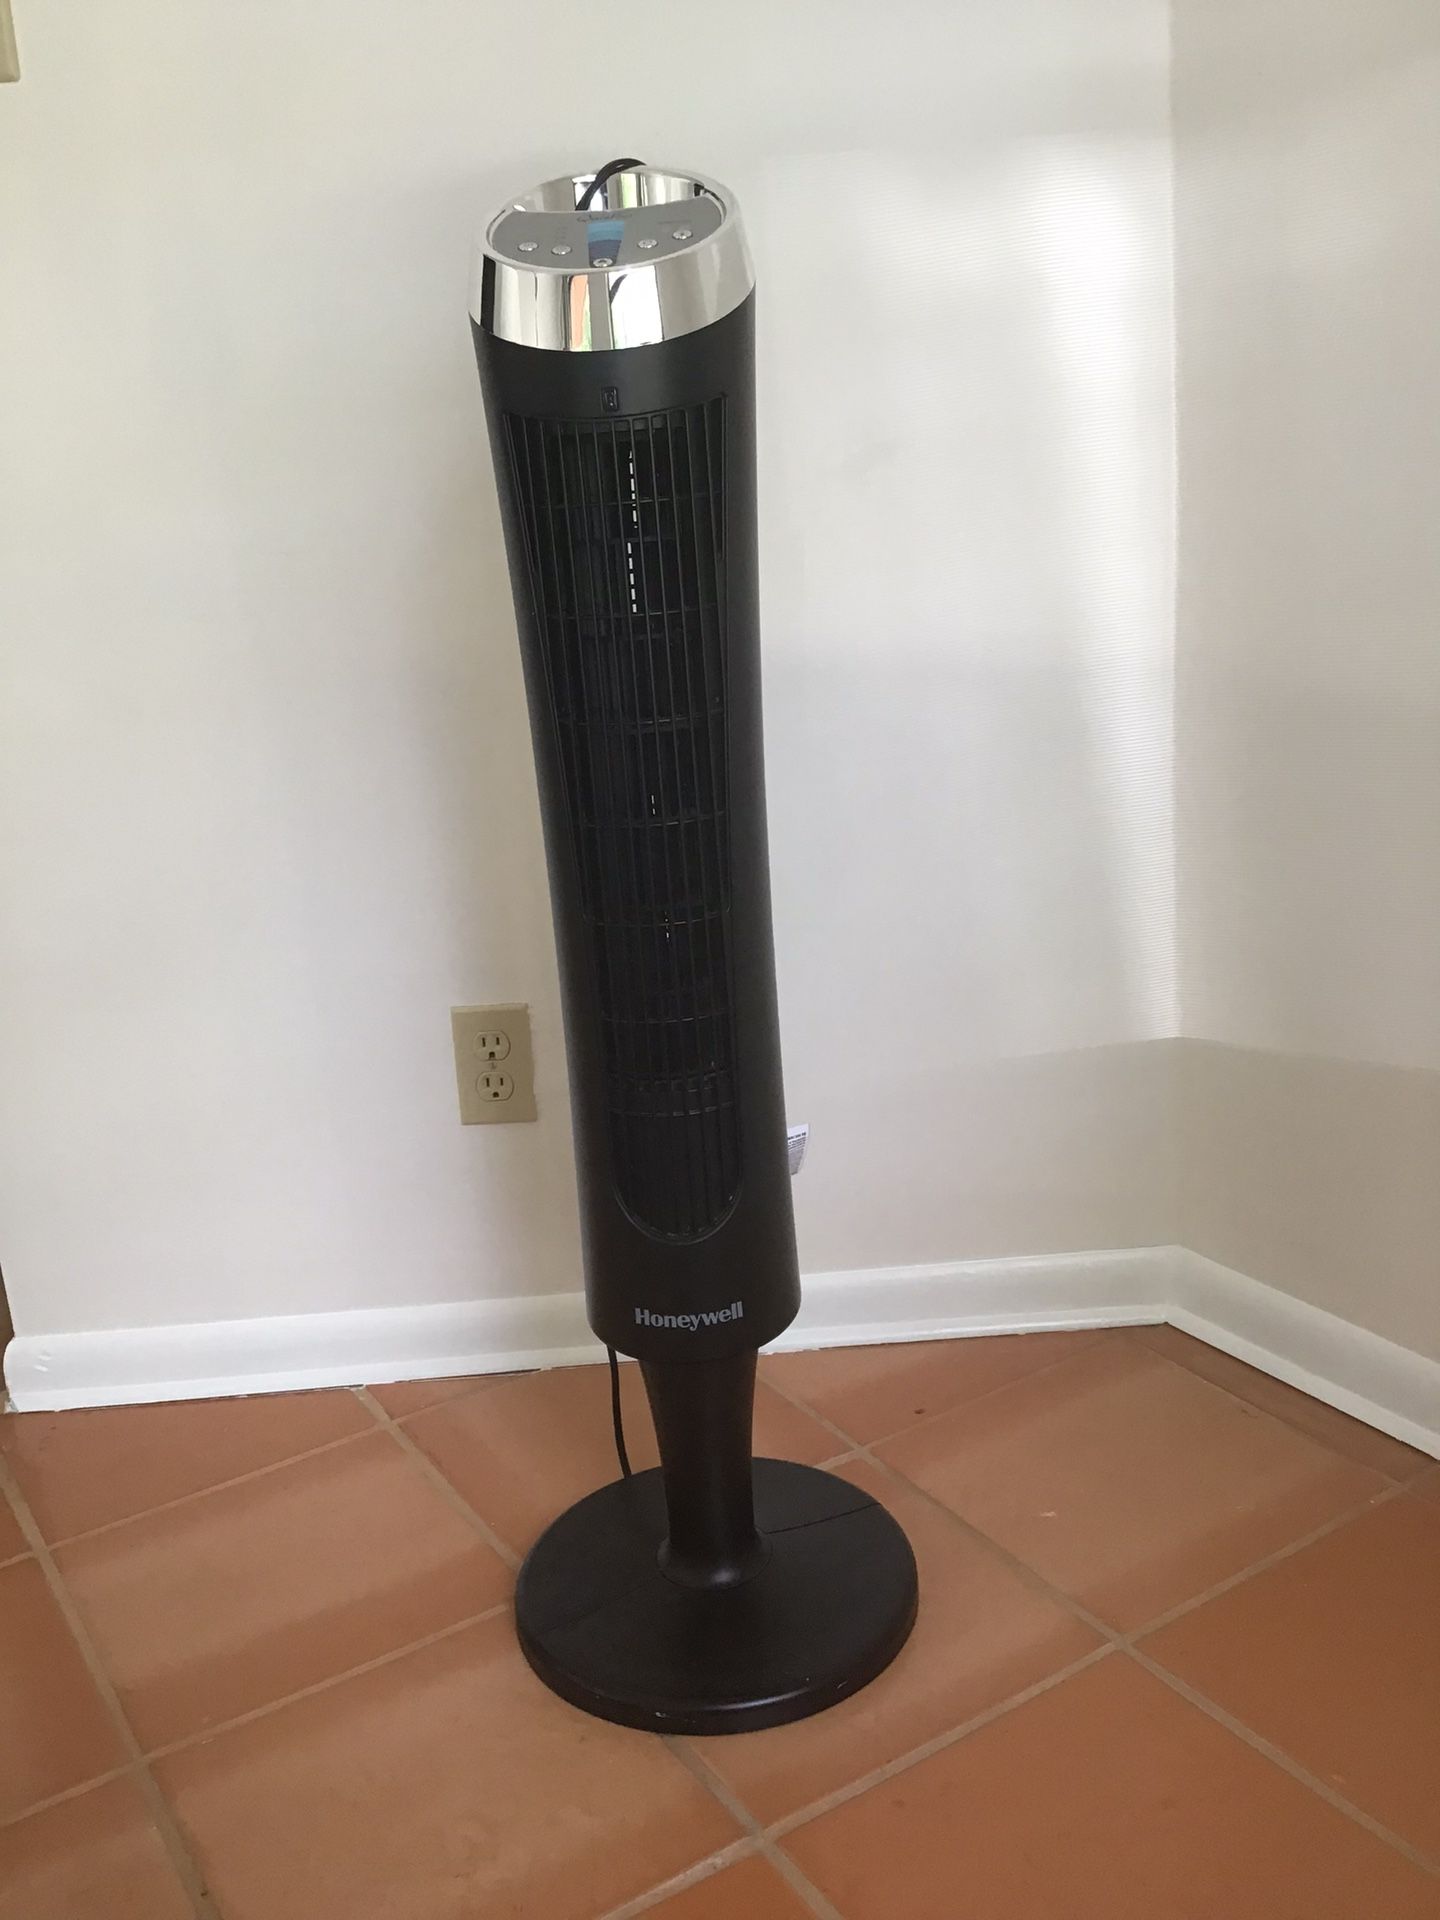 Honeywell Tower Fan w Remote